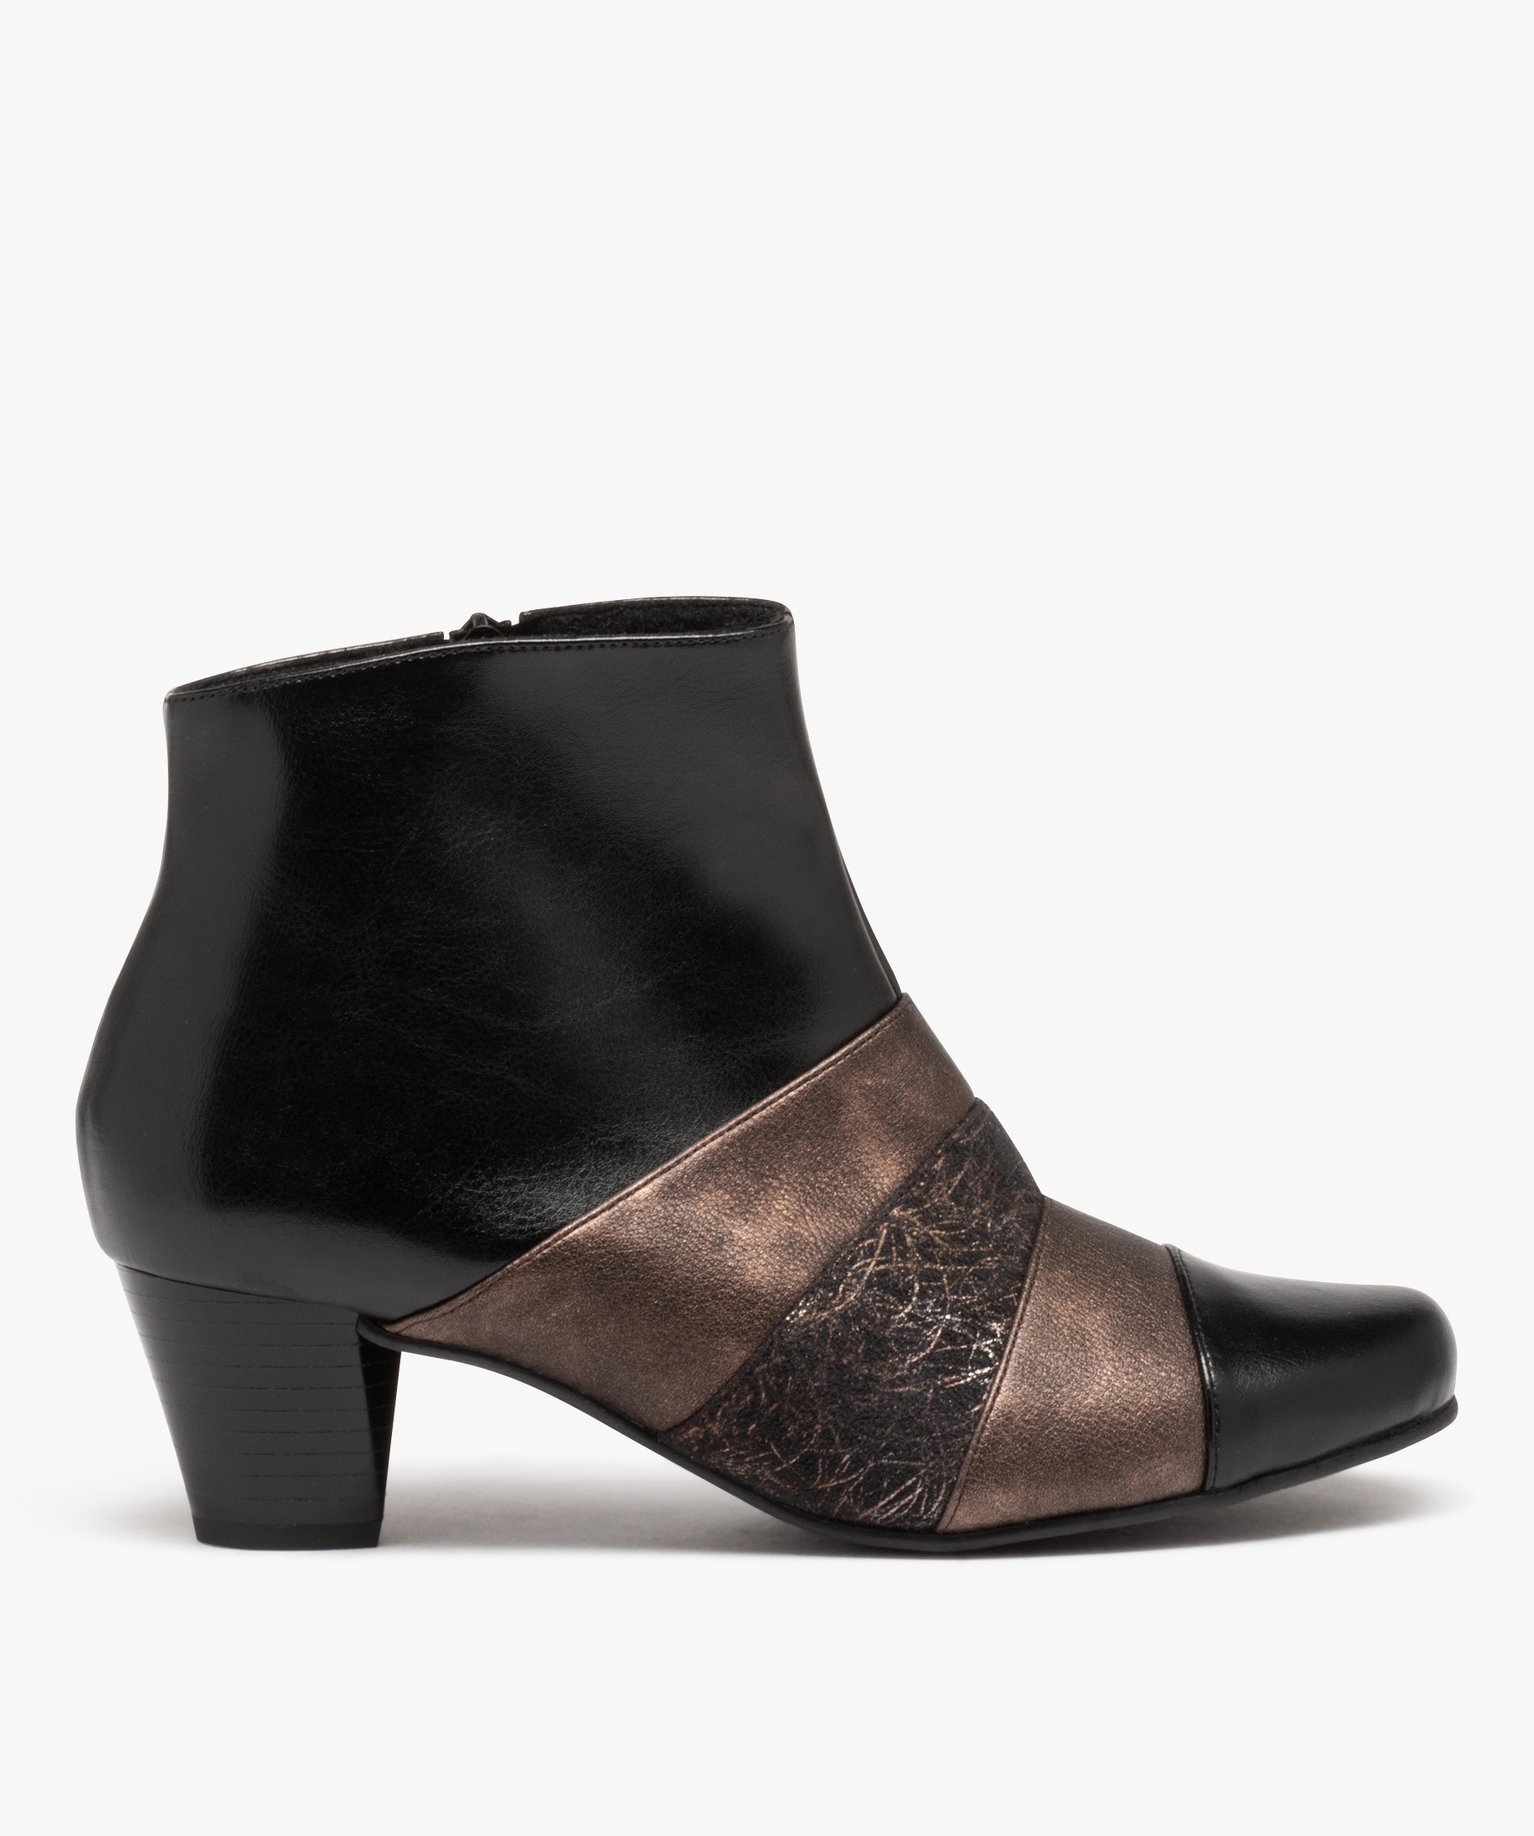 boots femme confort a talon et bout pointu avec details metallises noir